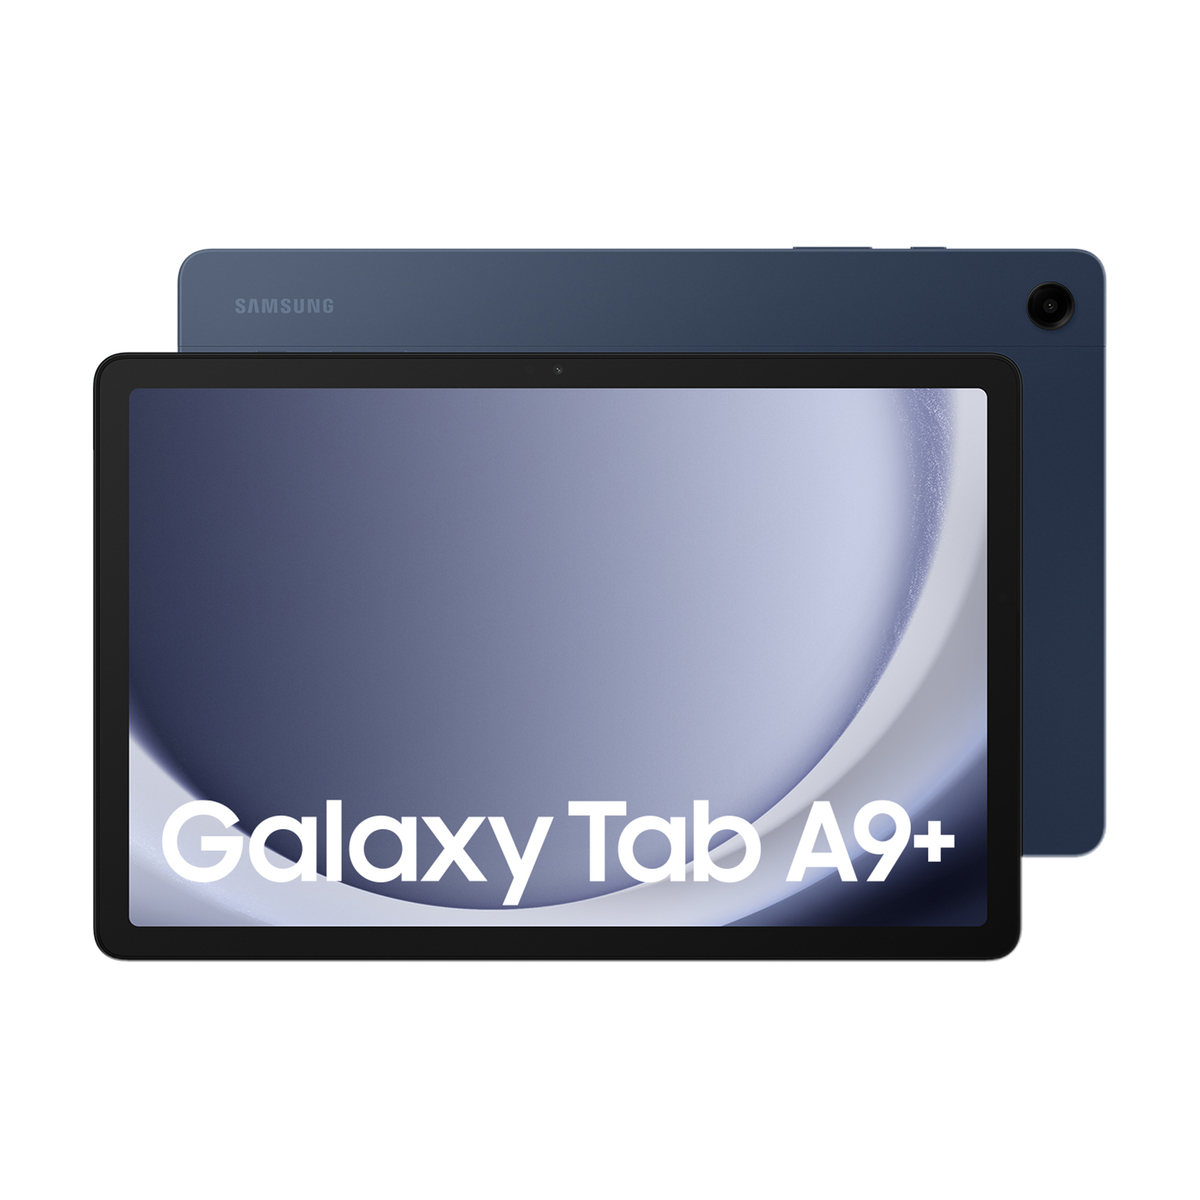 Galaxy Tab A9+ 128GB Navy